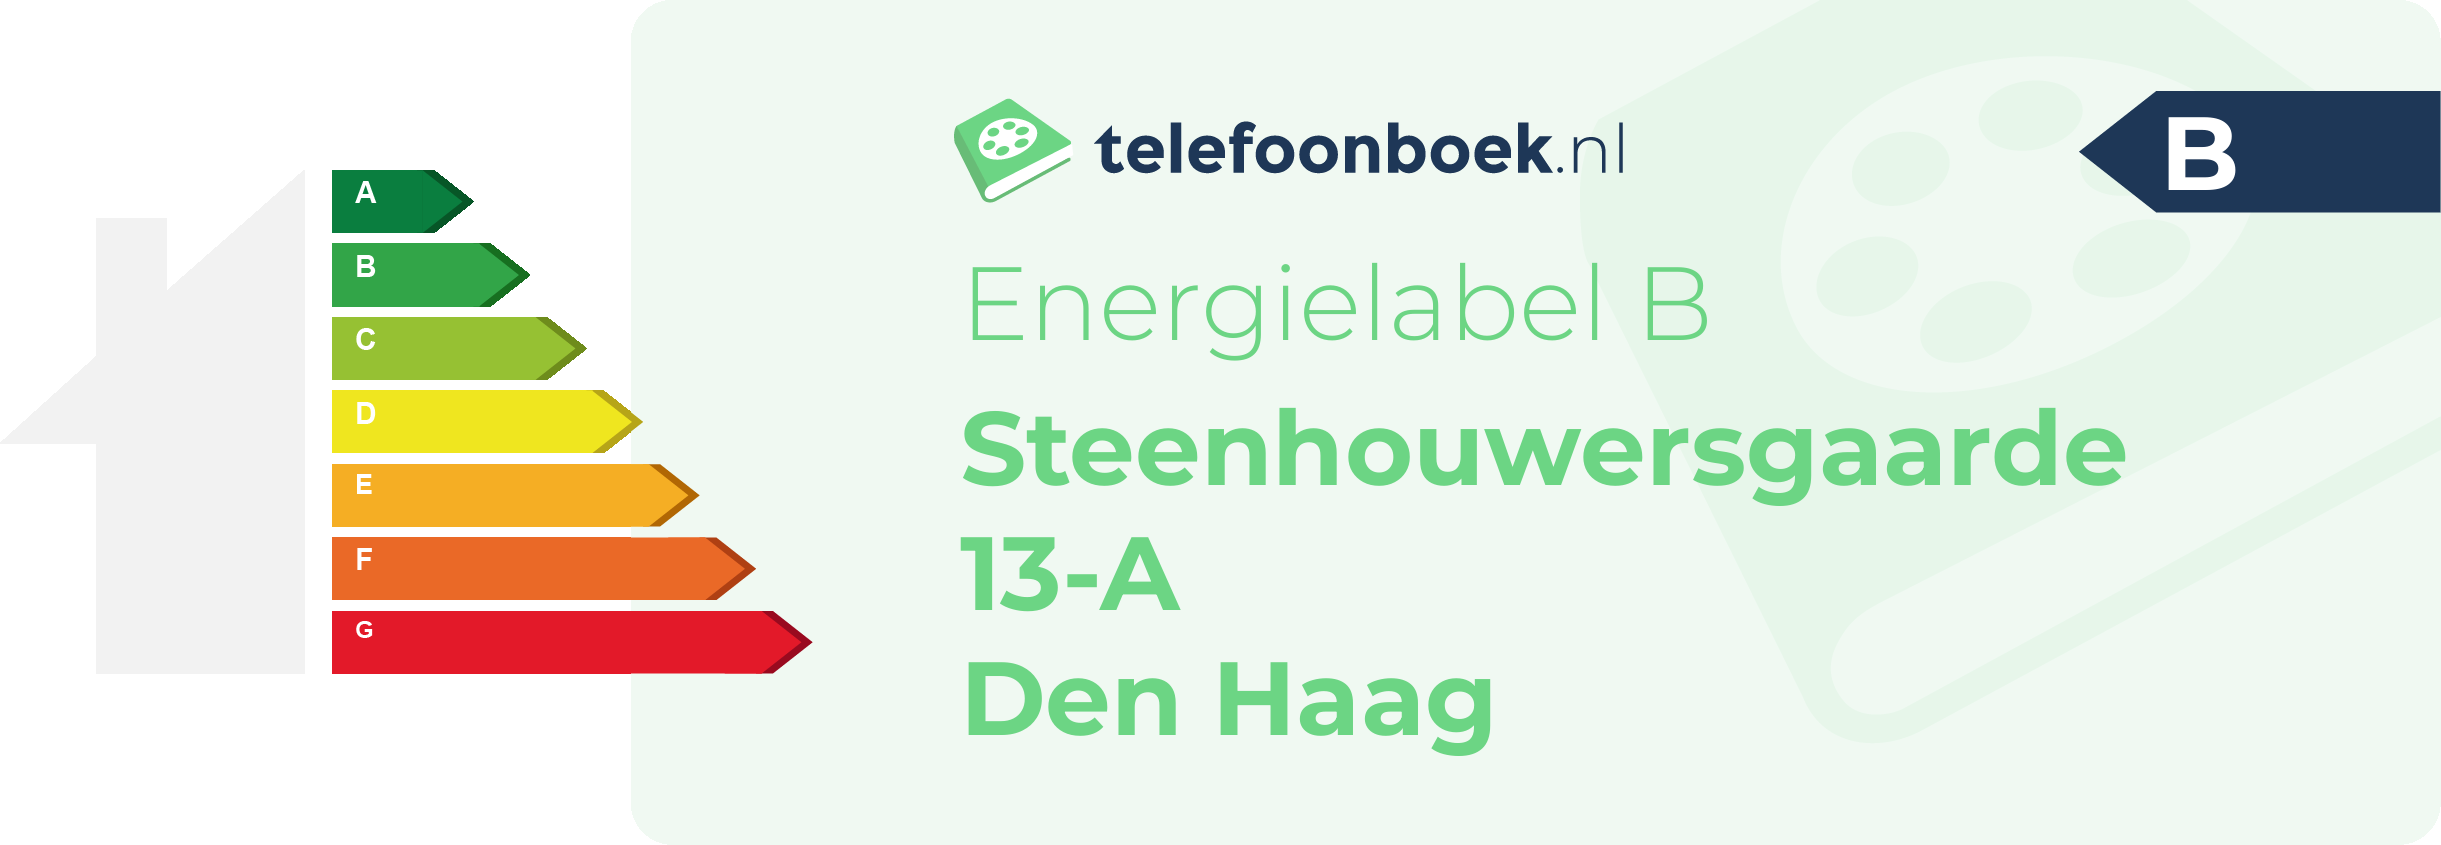 Energielabel Steenhouwersgaarde 13-A Den Haag